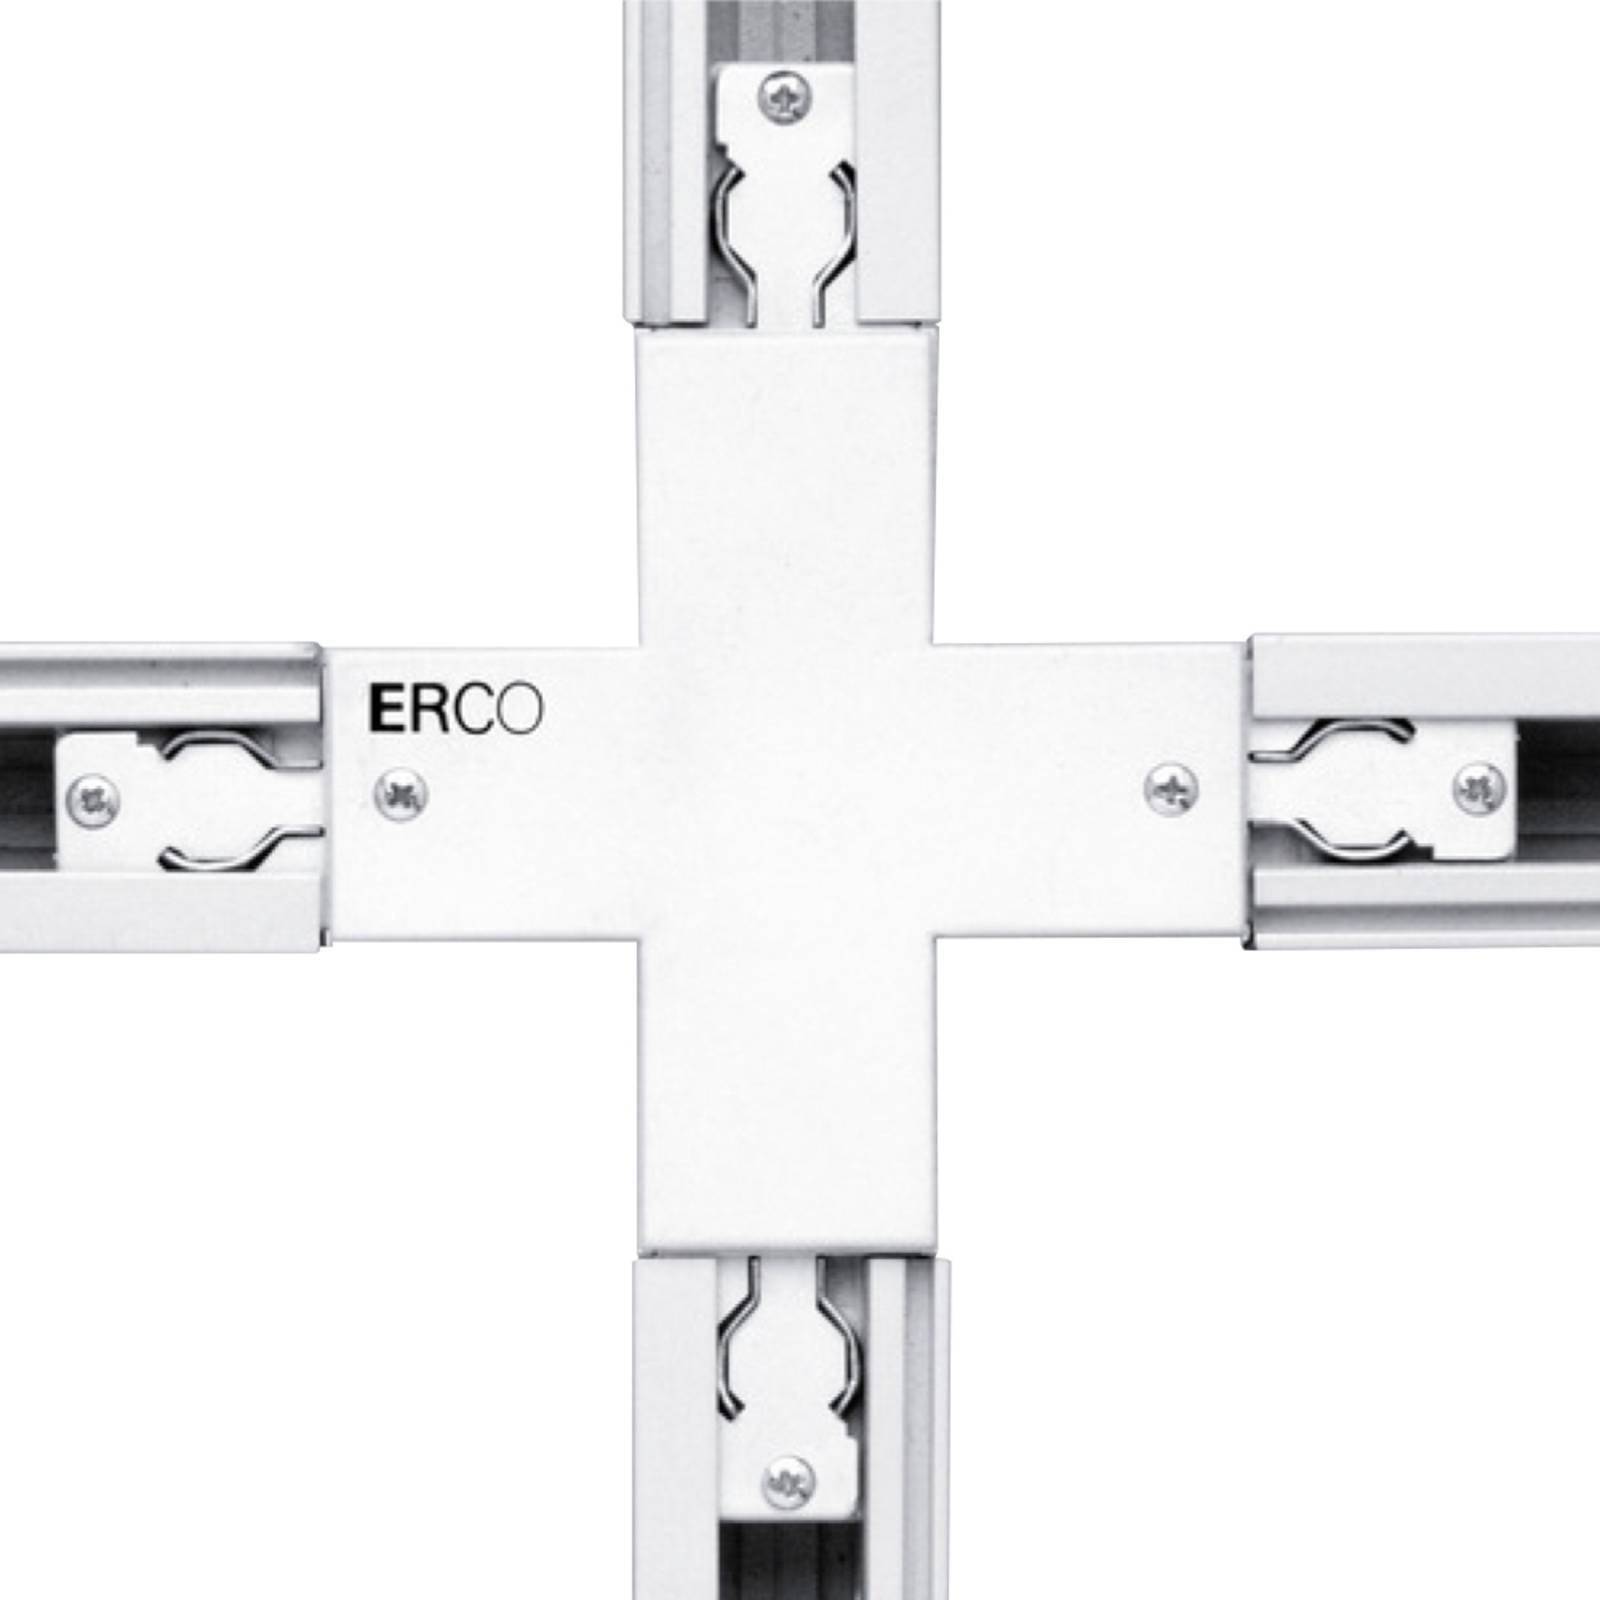 ERCO krydskonnektor til 3-fase skinner hvid